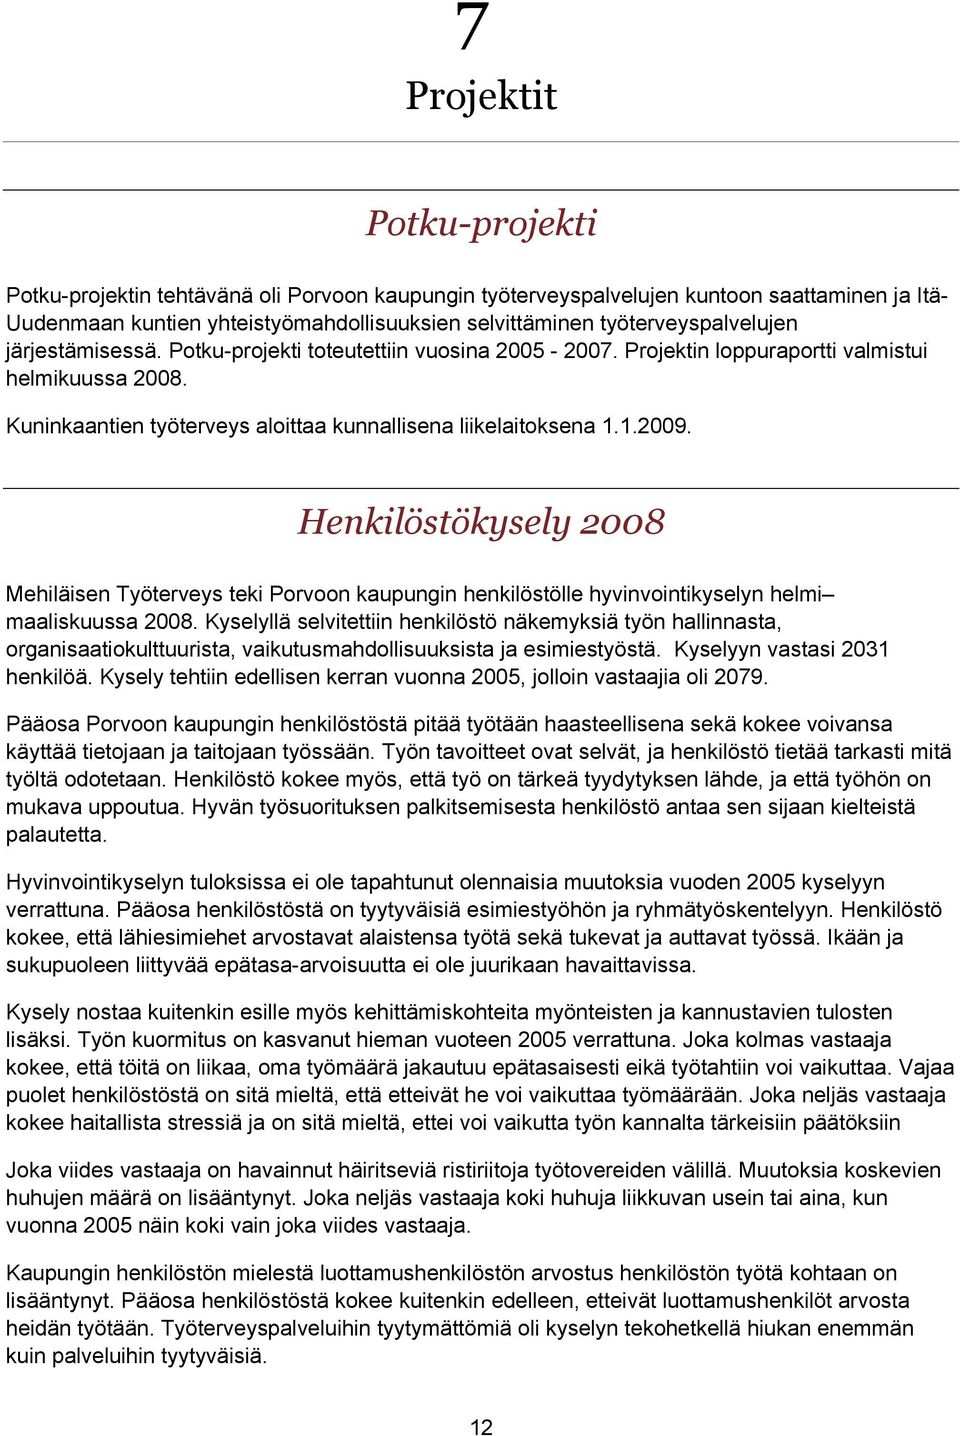 Kuninkaantien työterveys aloittaa kunnallisena liikelaitoksena 1.1.2009. Henkilöstökysely 2008 Mehiläisen Työterveys teki Porvoon kaupungin henkilöstölle hyvinvointikyselyn helmi maaliskuussa 2008.